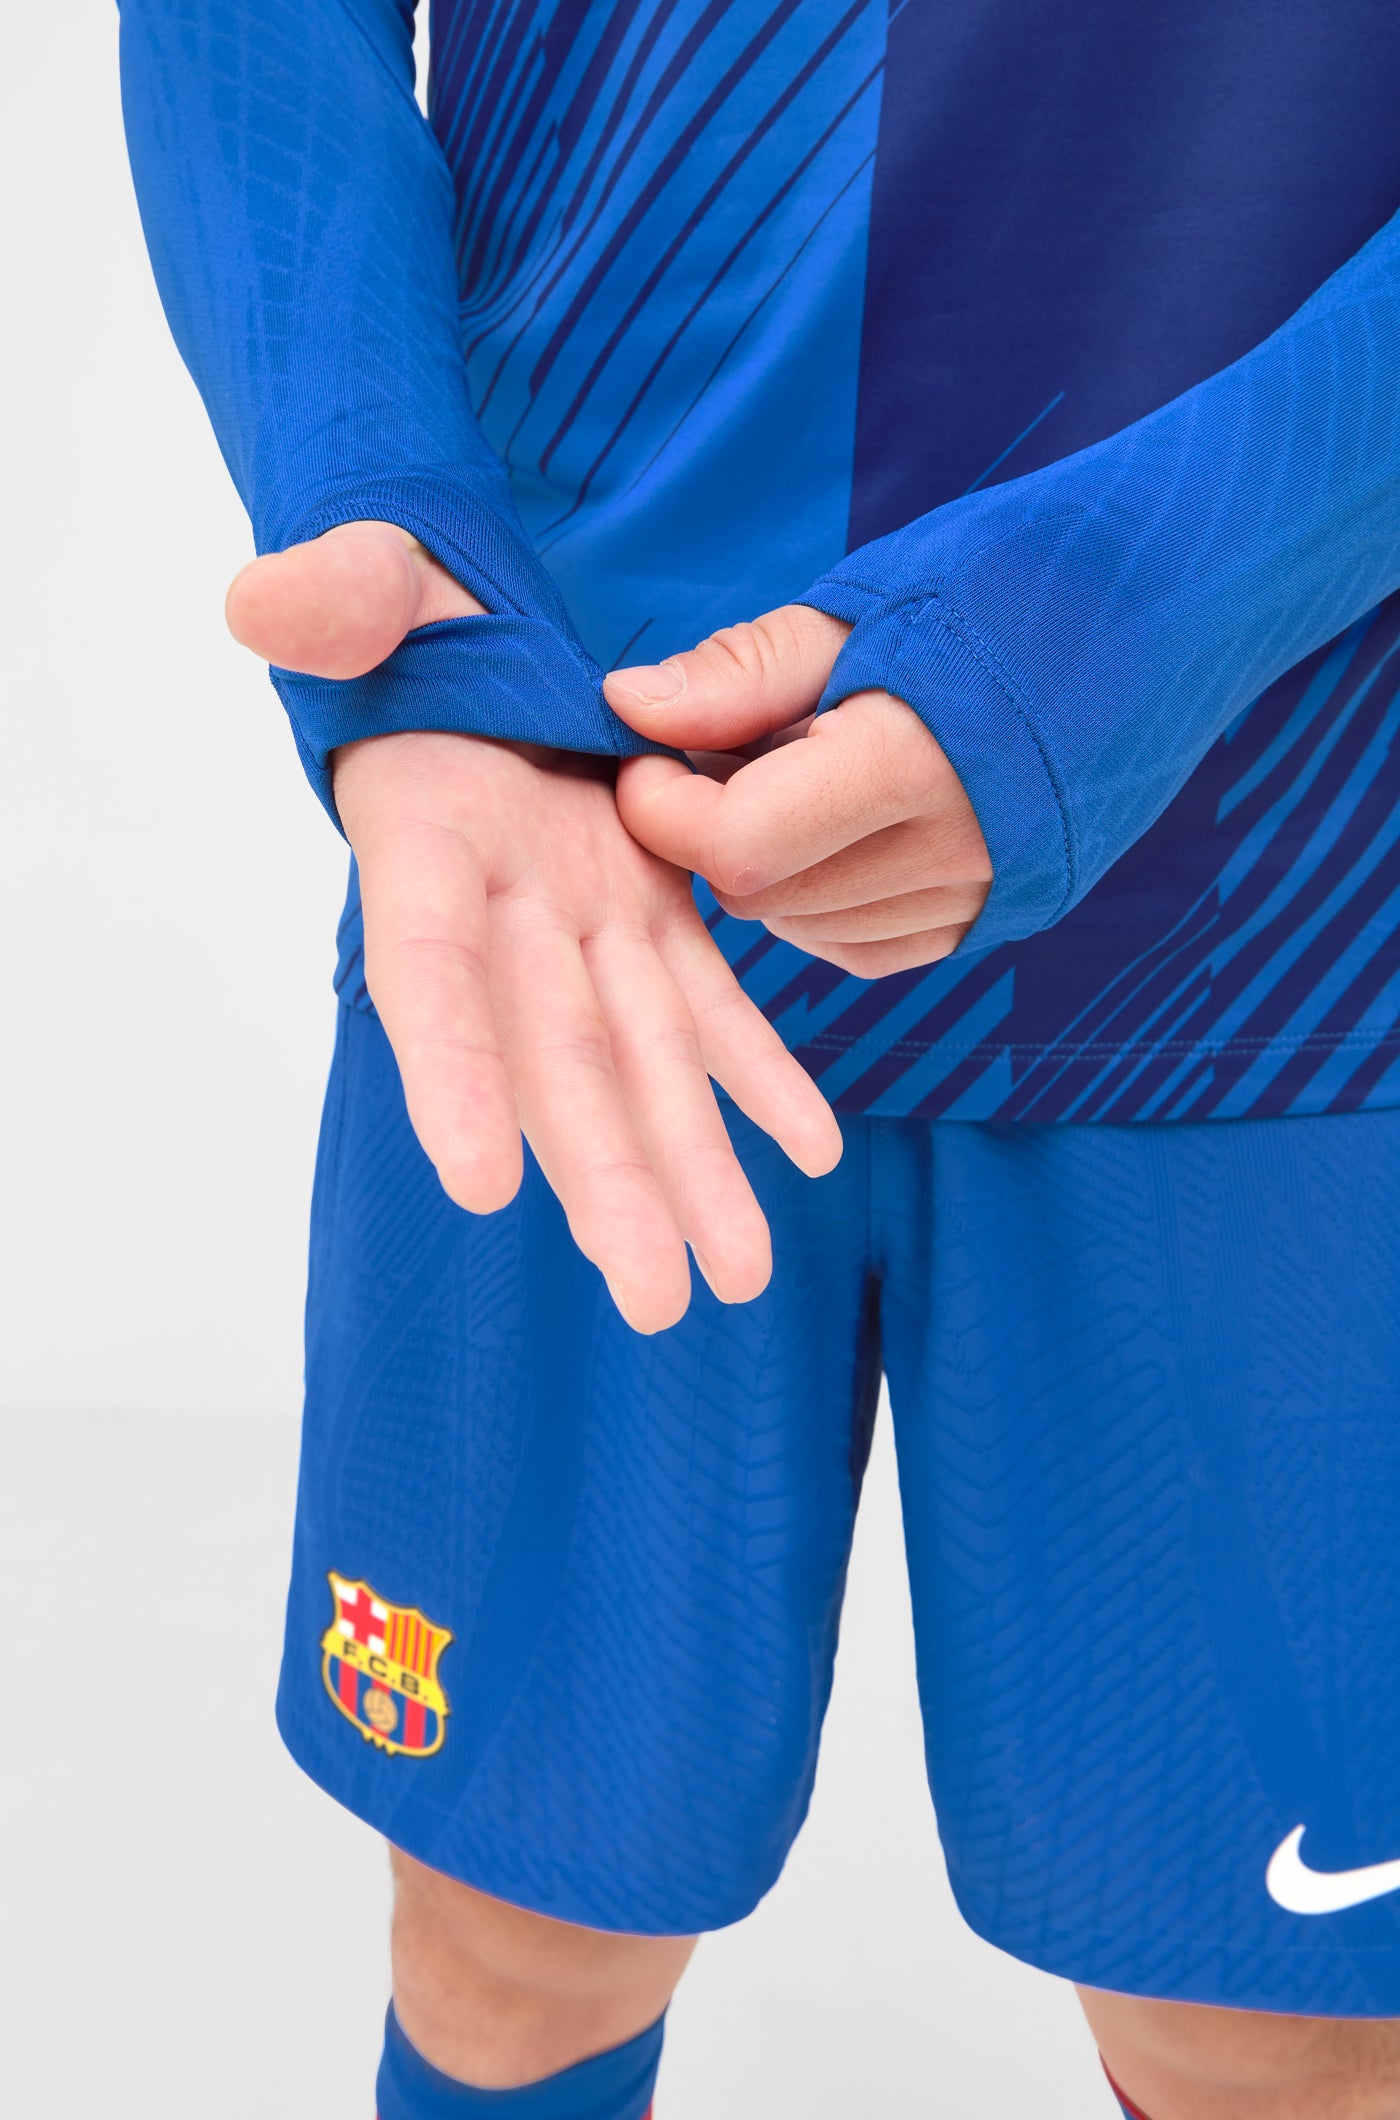 Sweat-Shirt Avant-Match FC Barcelone 23/24 – La Liga